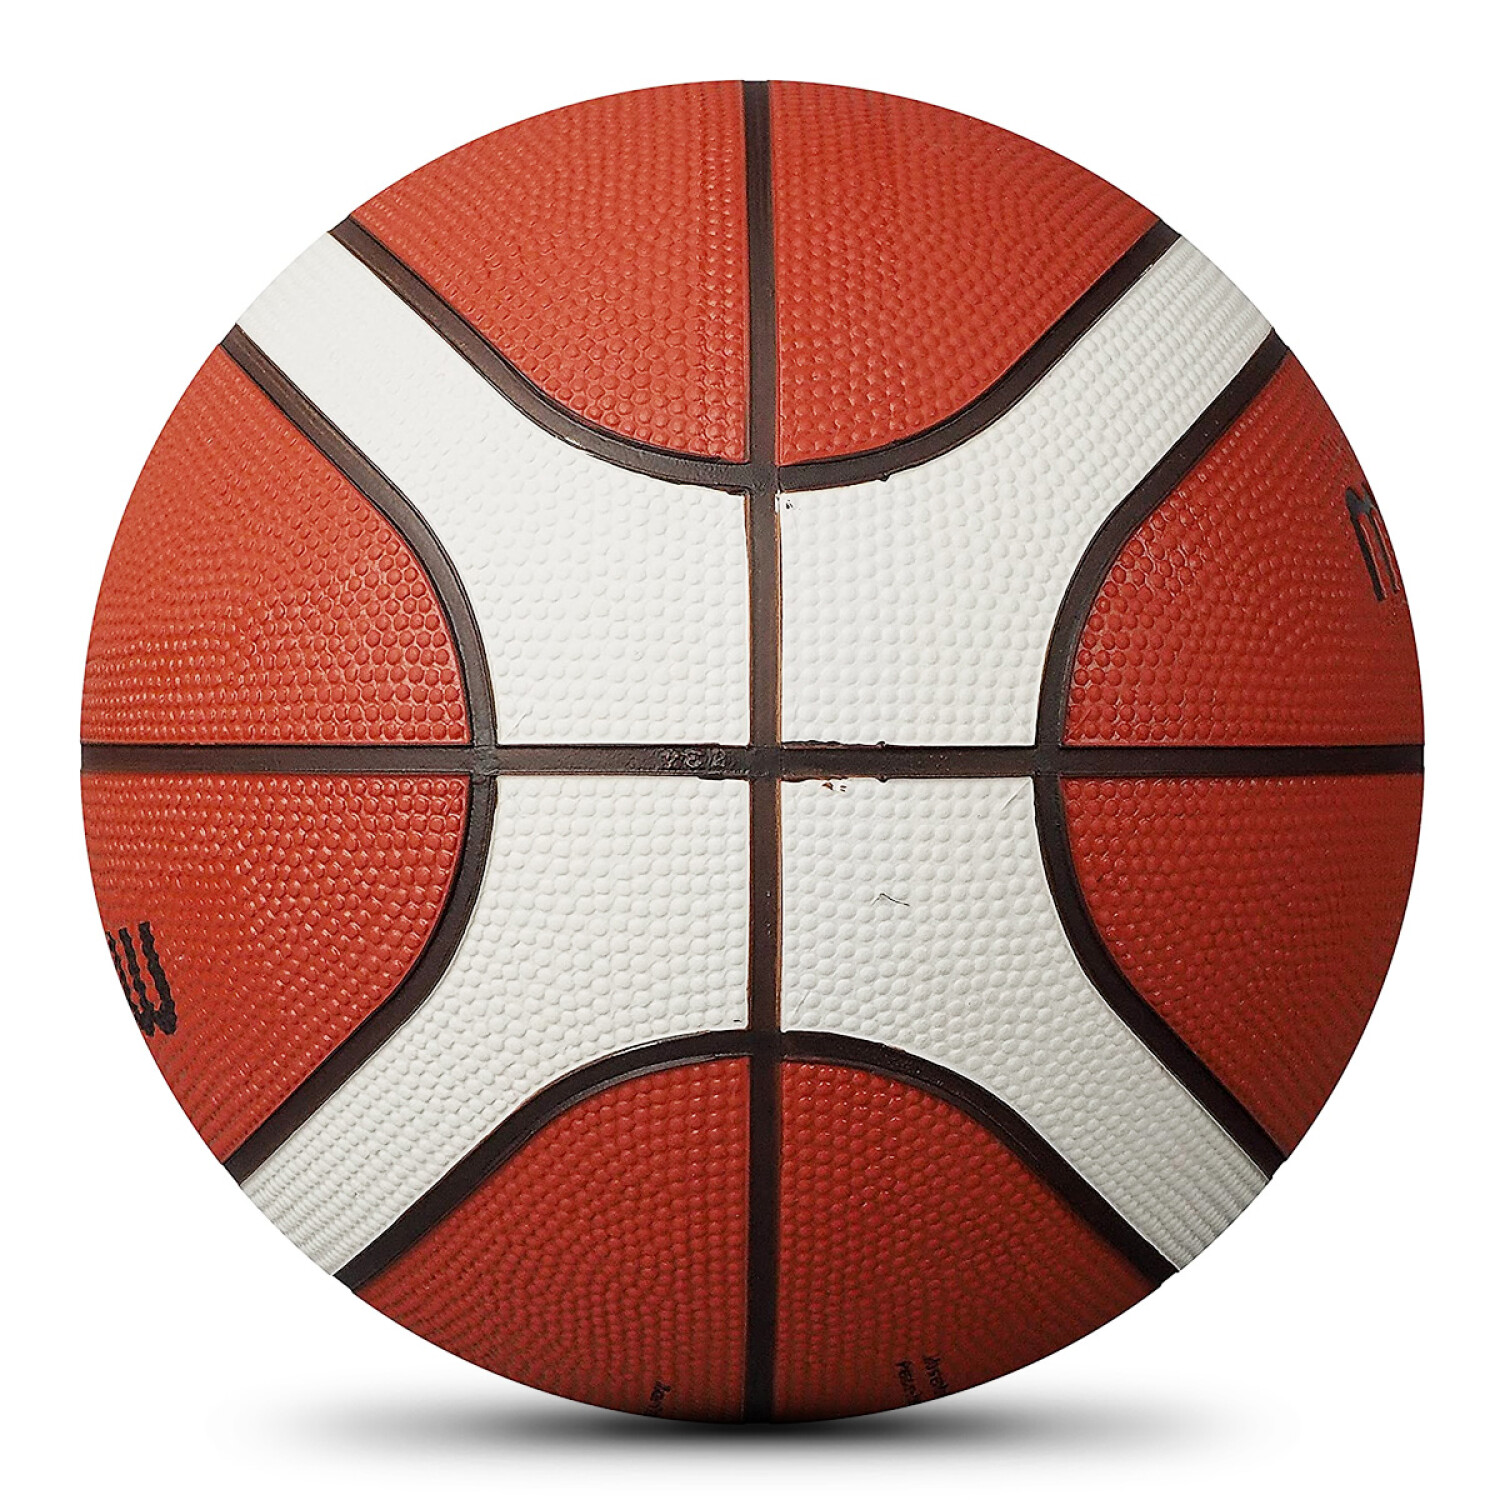 Pelota Basket Molten Gr5 Goma Nº5 Original Basquetbol - B5G 2000 — El Rey  del entretenimiento